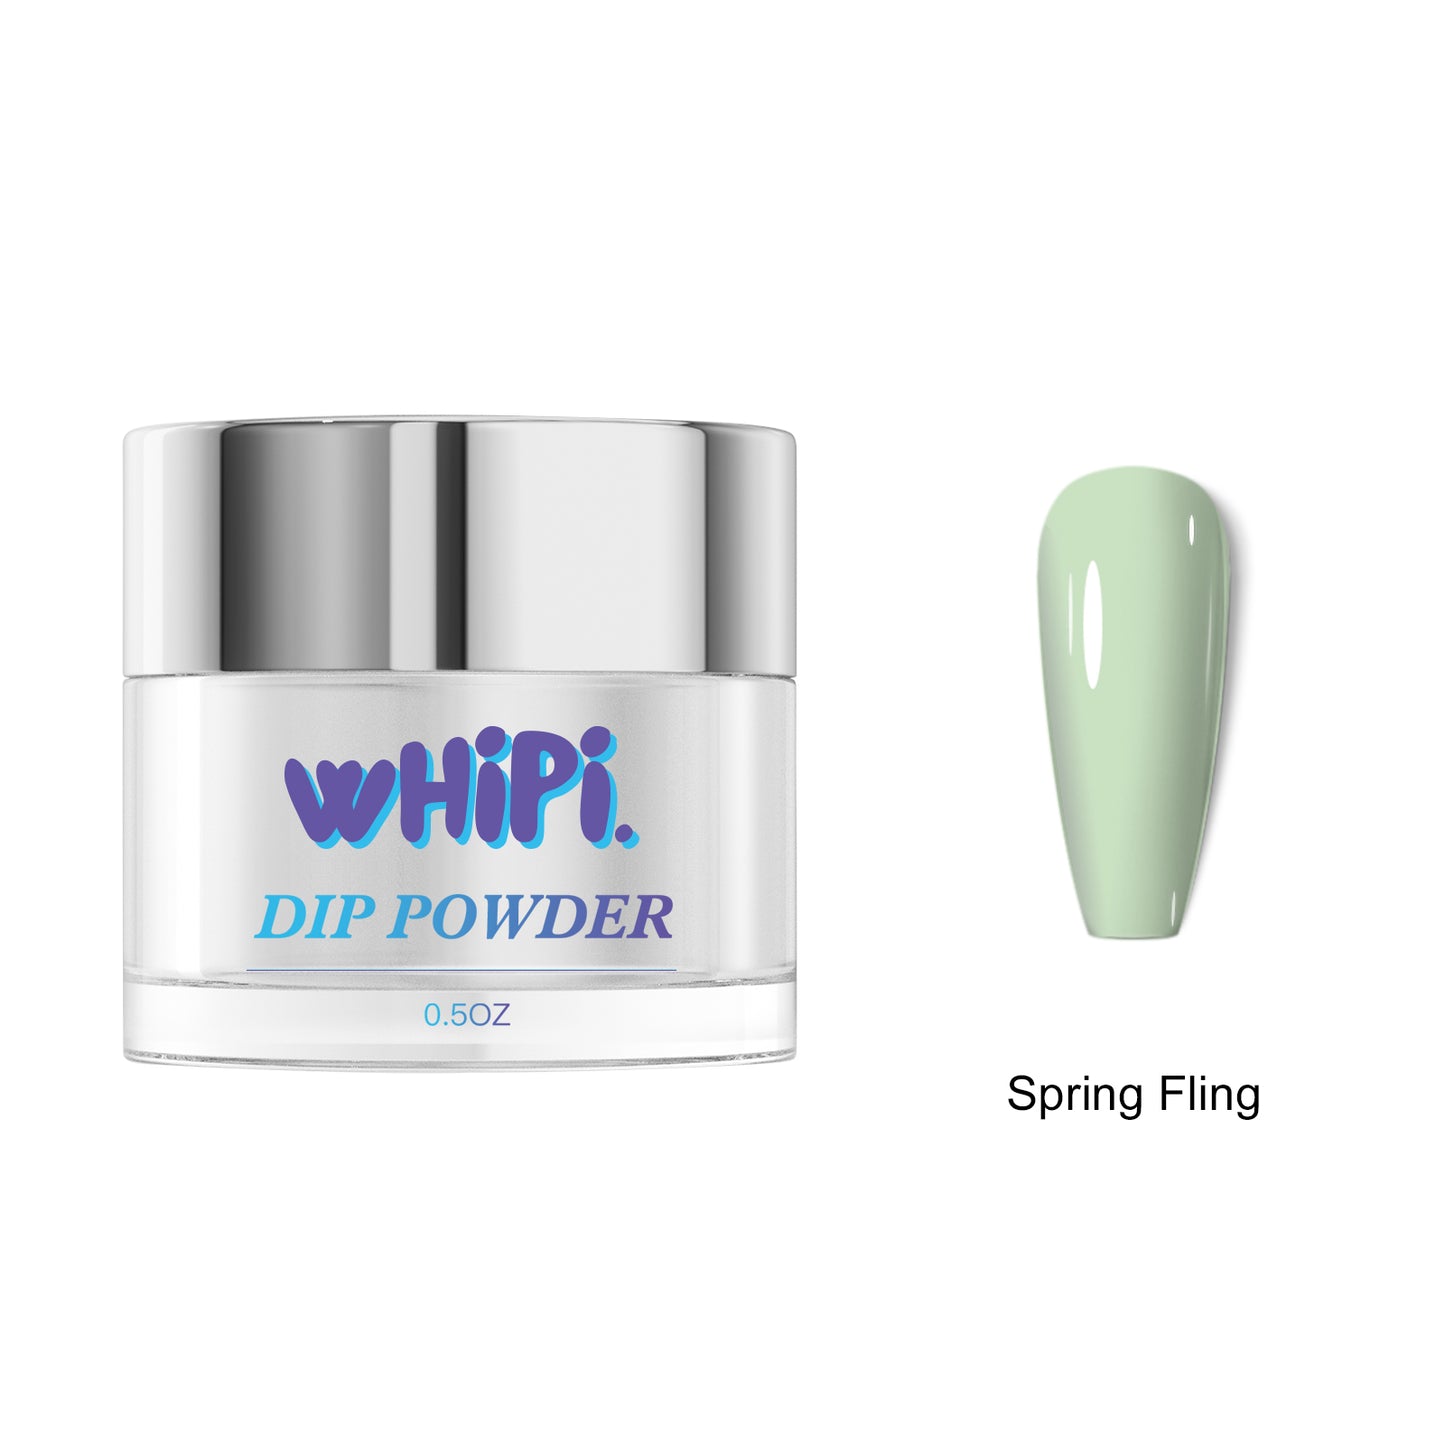 Spring Fling Dip Powder